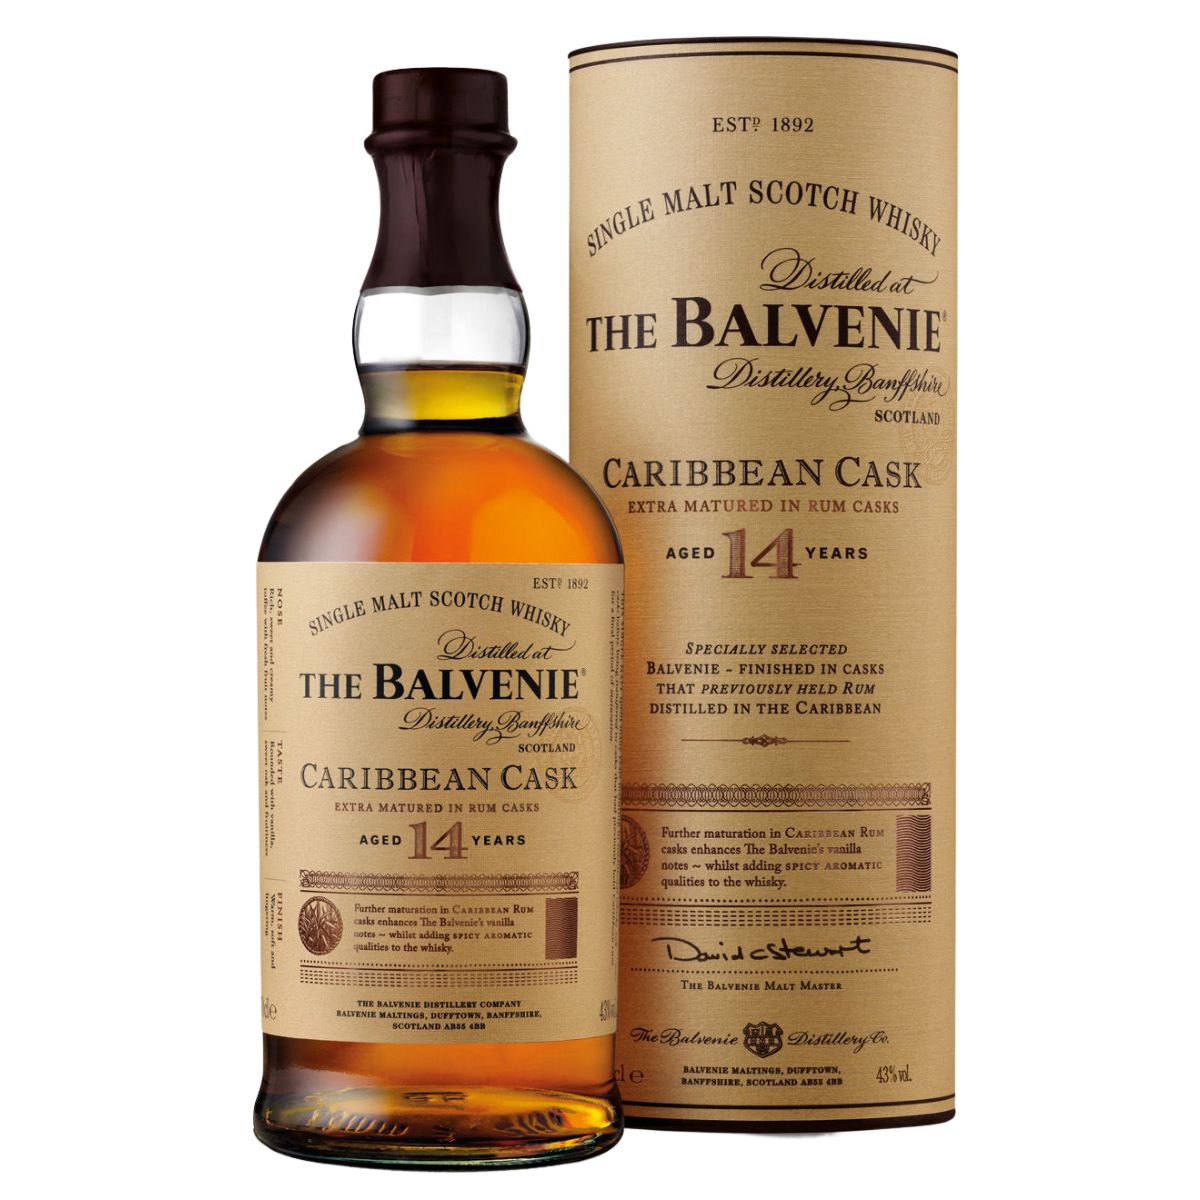 The Balvenie | 14 Year Old Caribbean Cask | Single Malt Whisky | 70cl